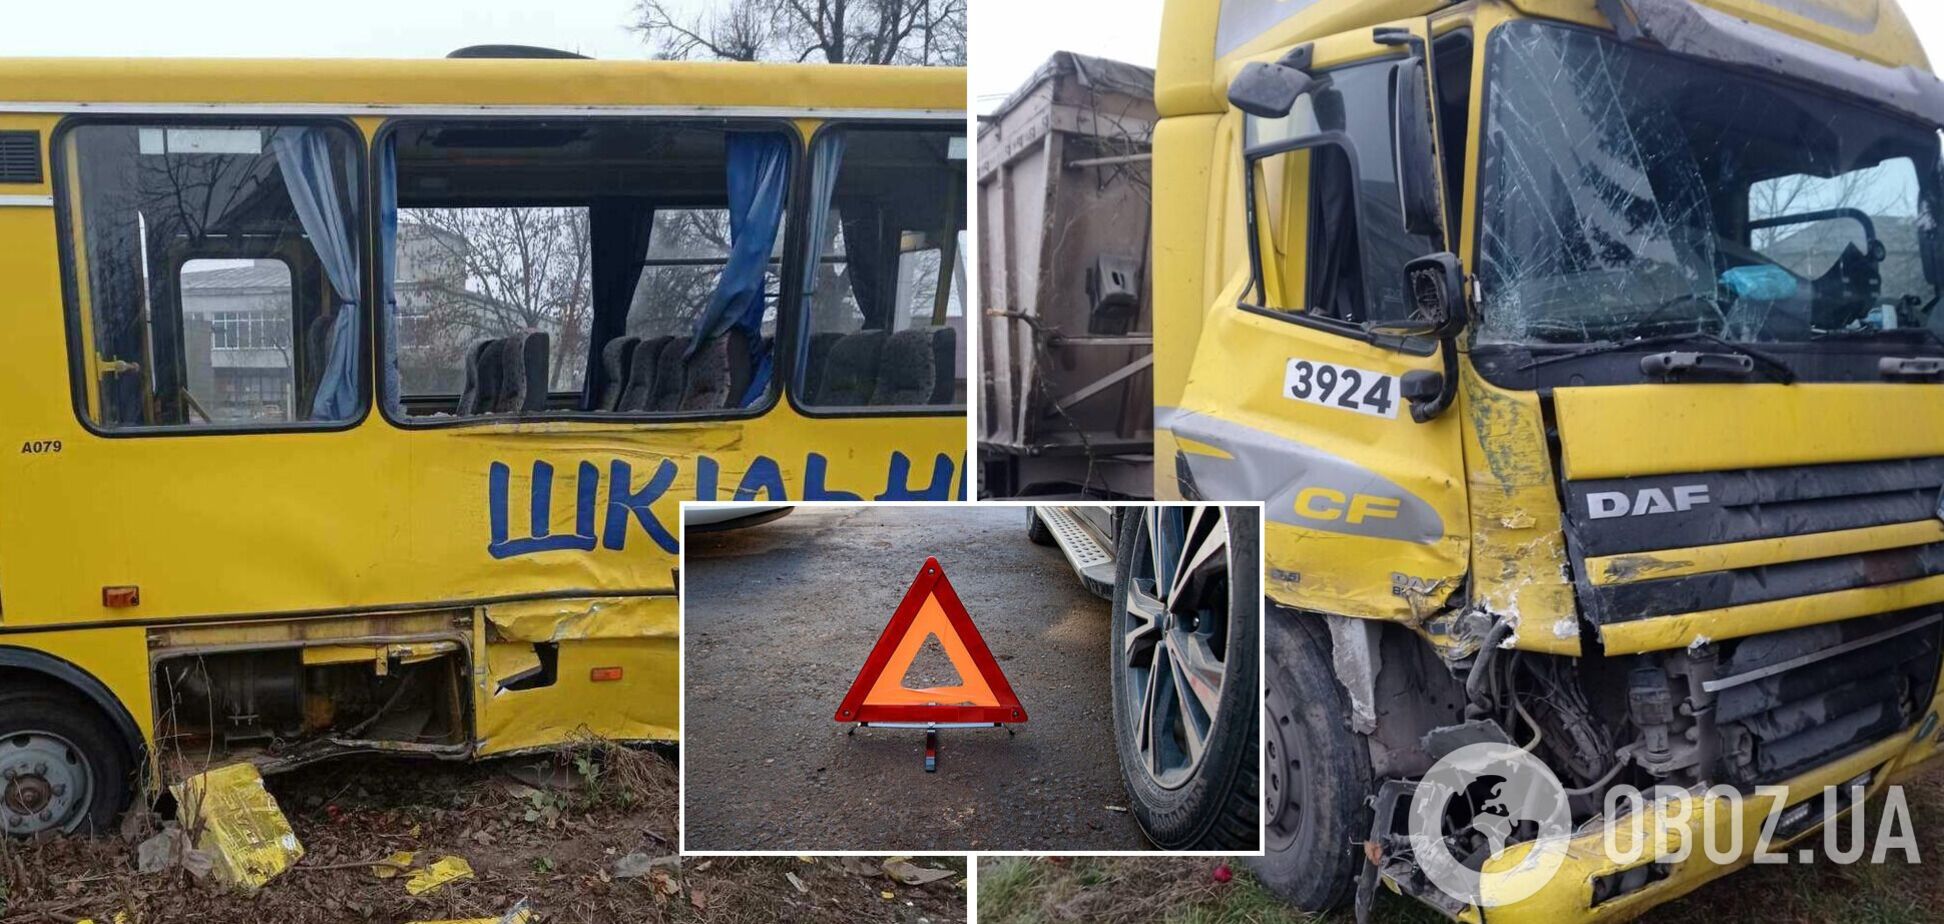 У Львівській області вантажівка влетіла у шкільний автобус, діти з травмами потрапили до лікарні. Фото